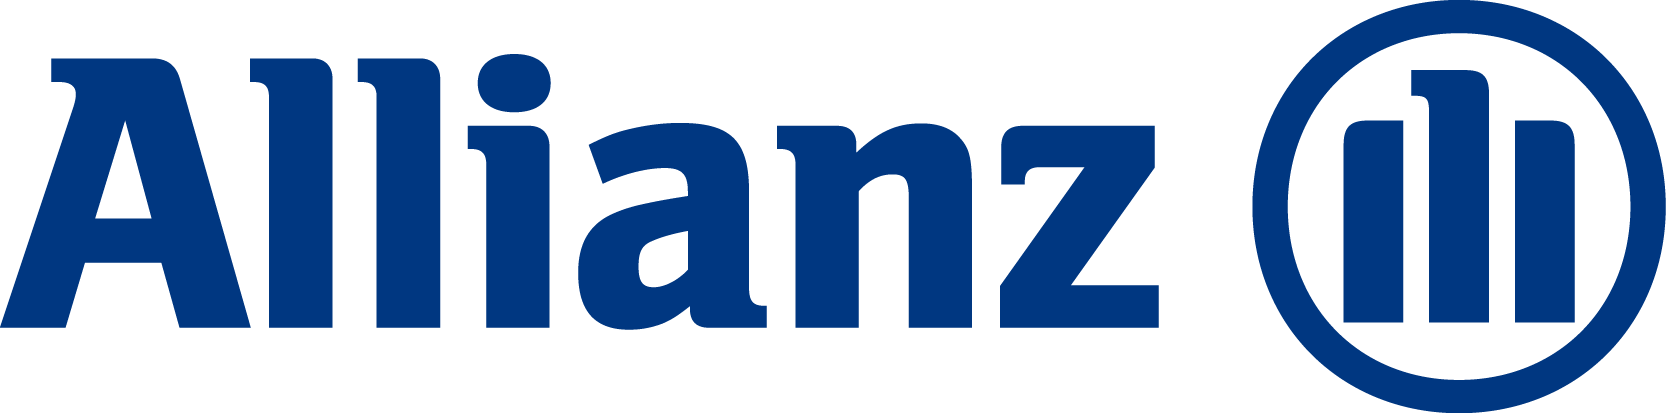 Allianz Mxico